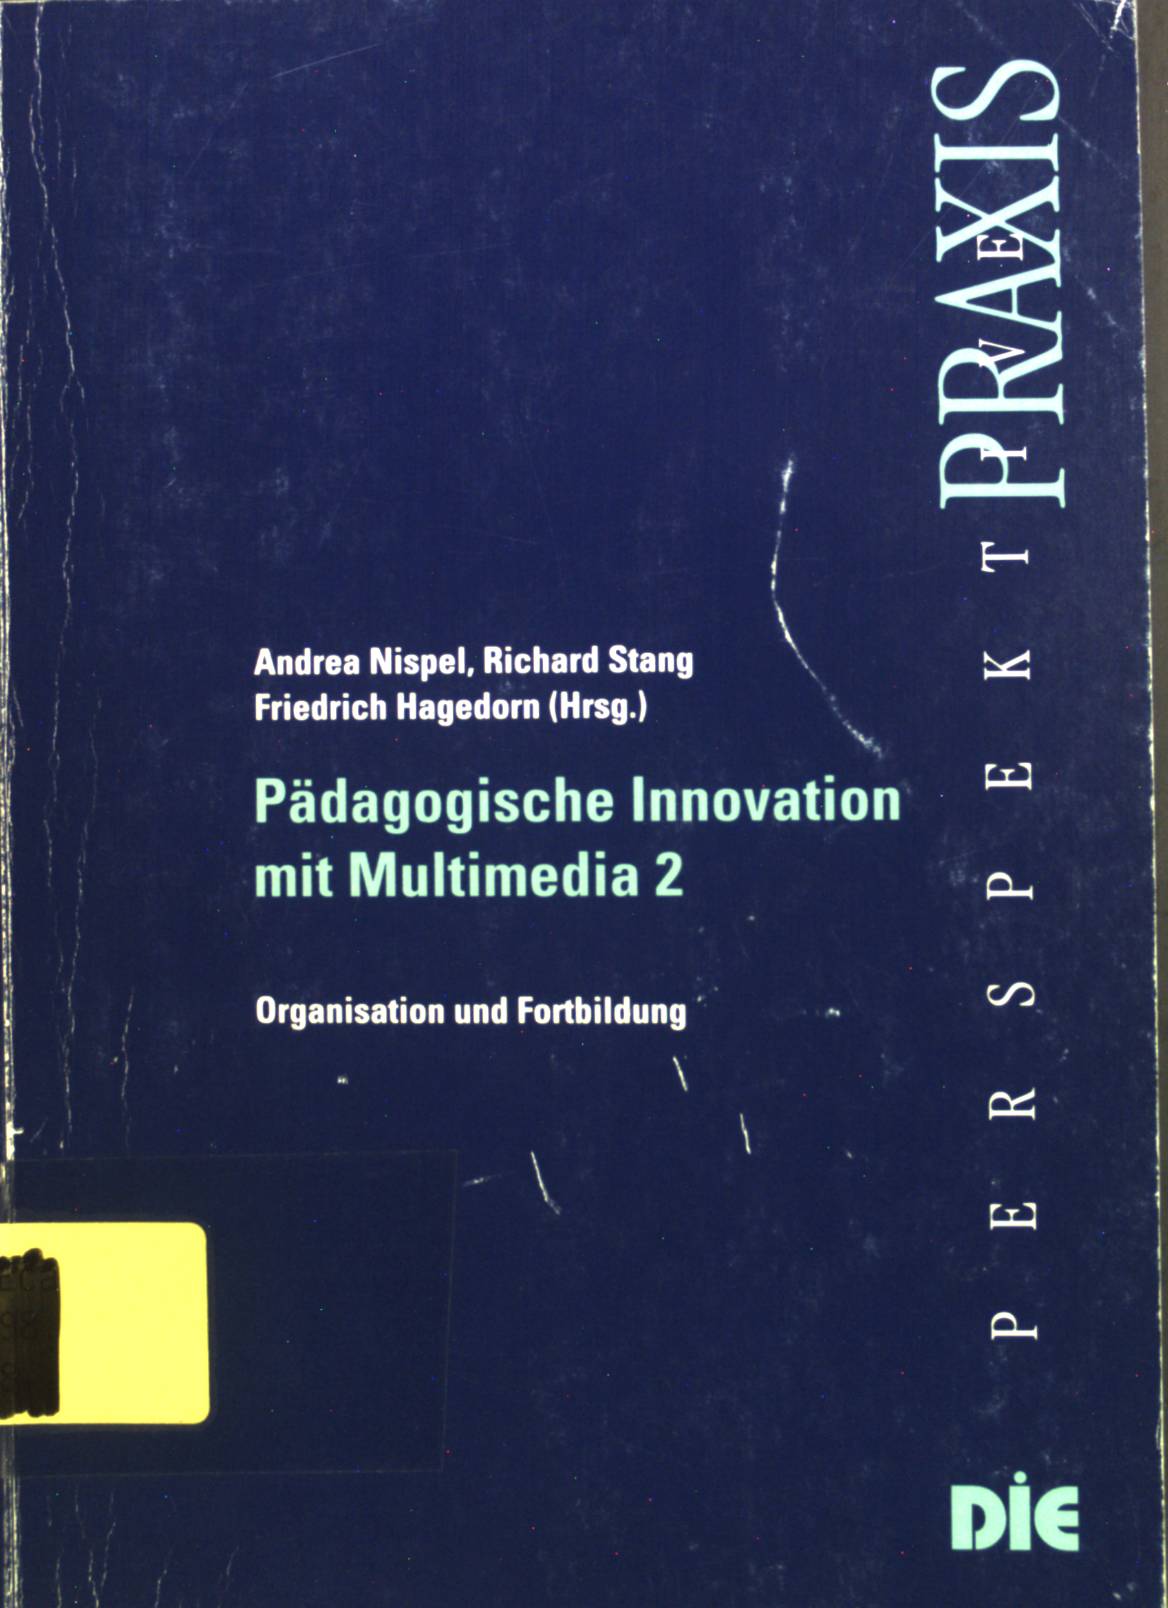 Pädagogische Innovation mit Multimedia; 2., Organisation und Fortbildung. - Nispel, Andrea, Richard Stang und Friedrich Hagedorn